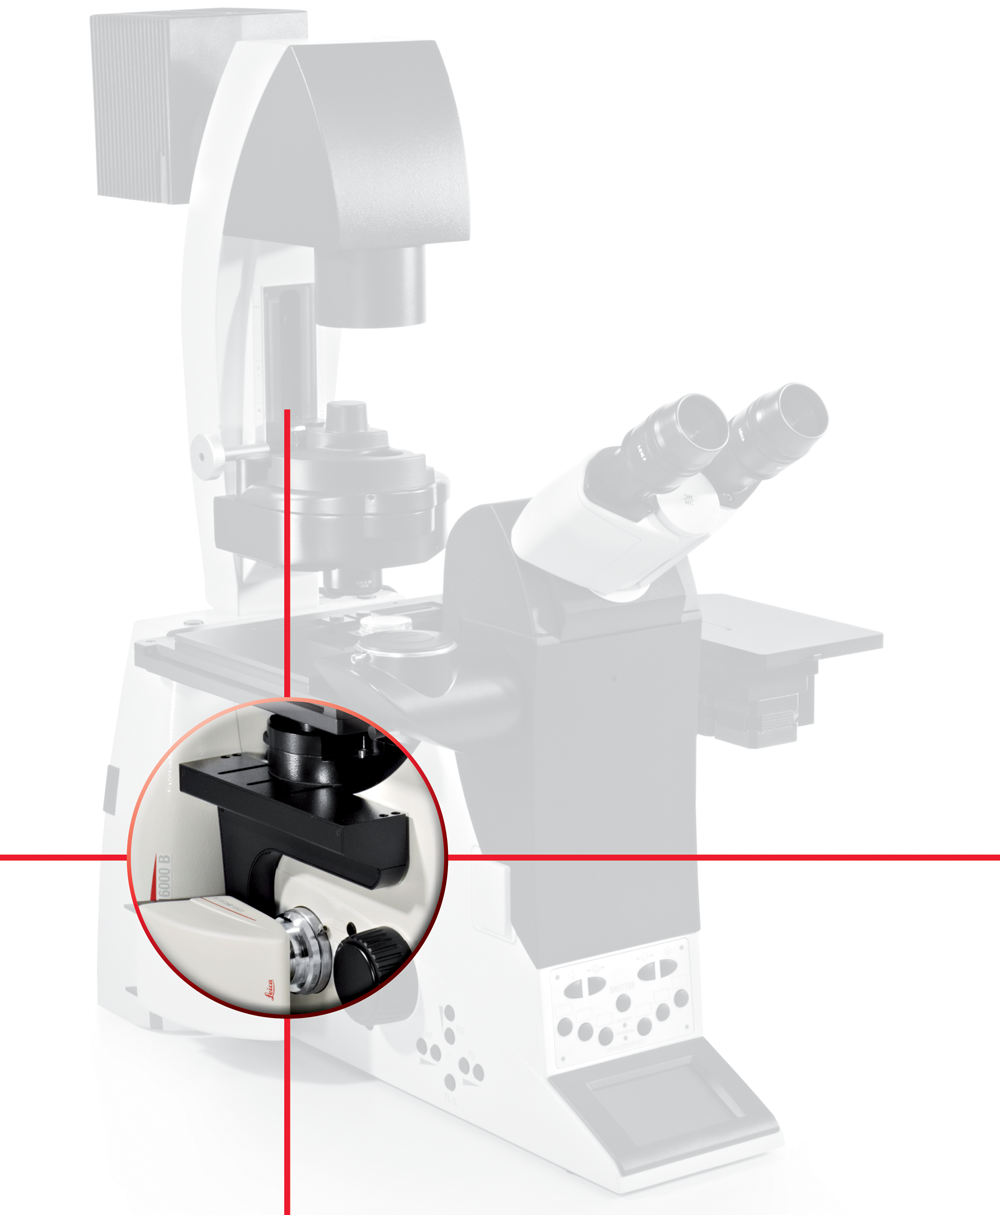 Sistema de microscopio automatizado Leica DMI6000 B con control de enfoque adaptable